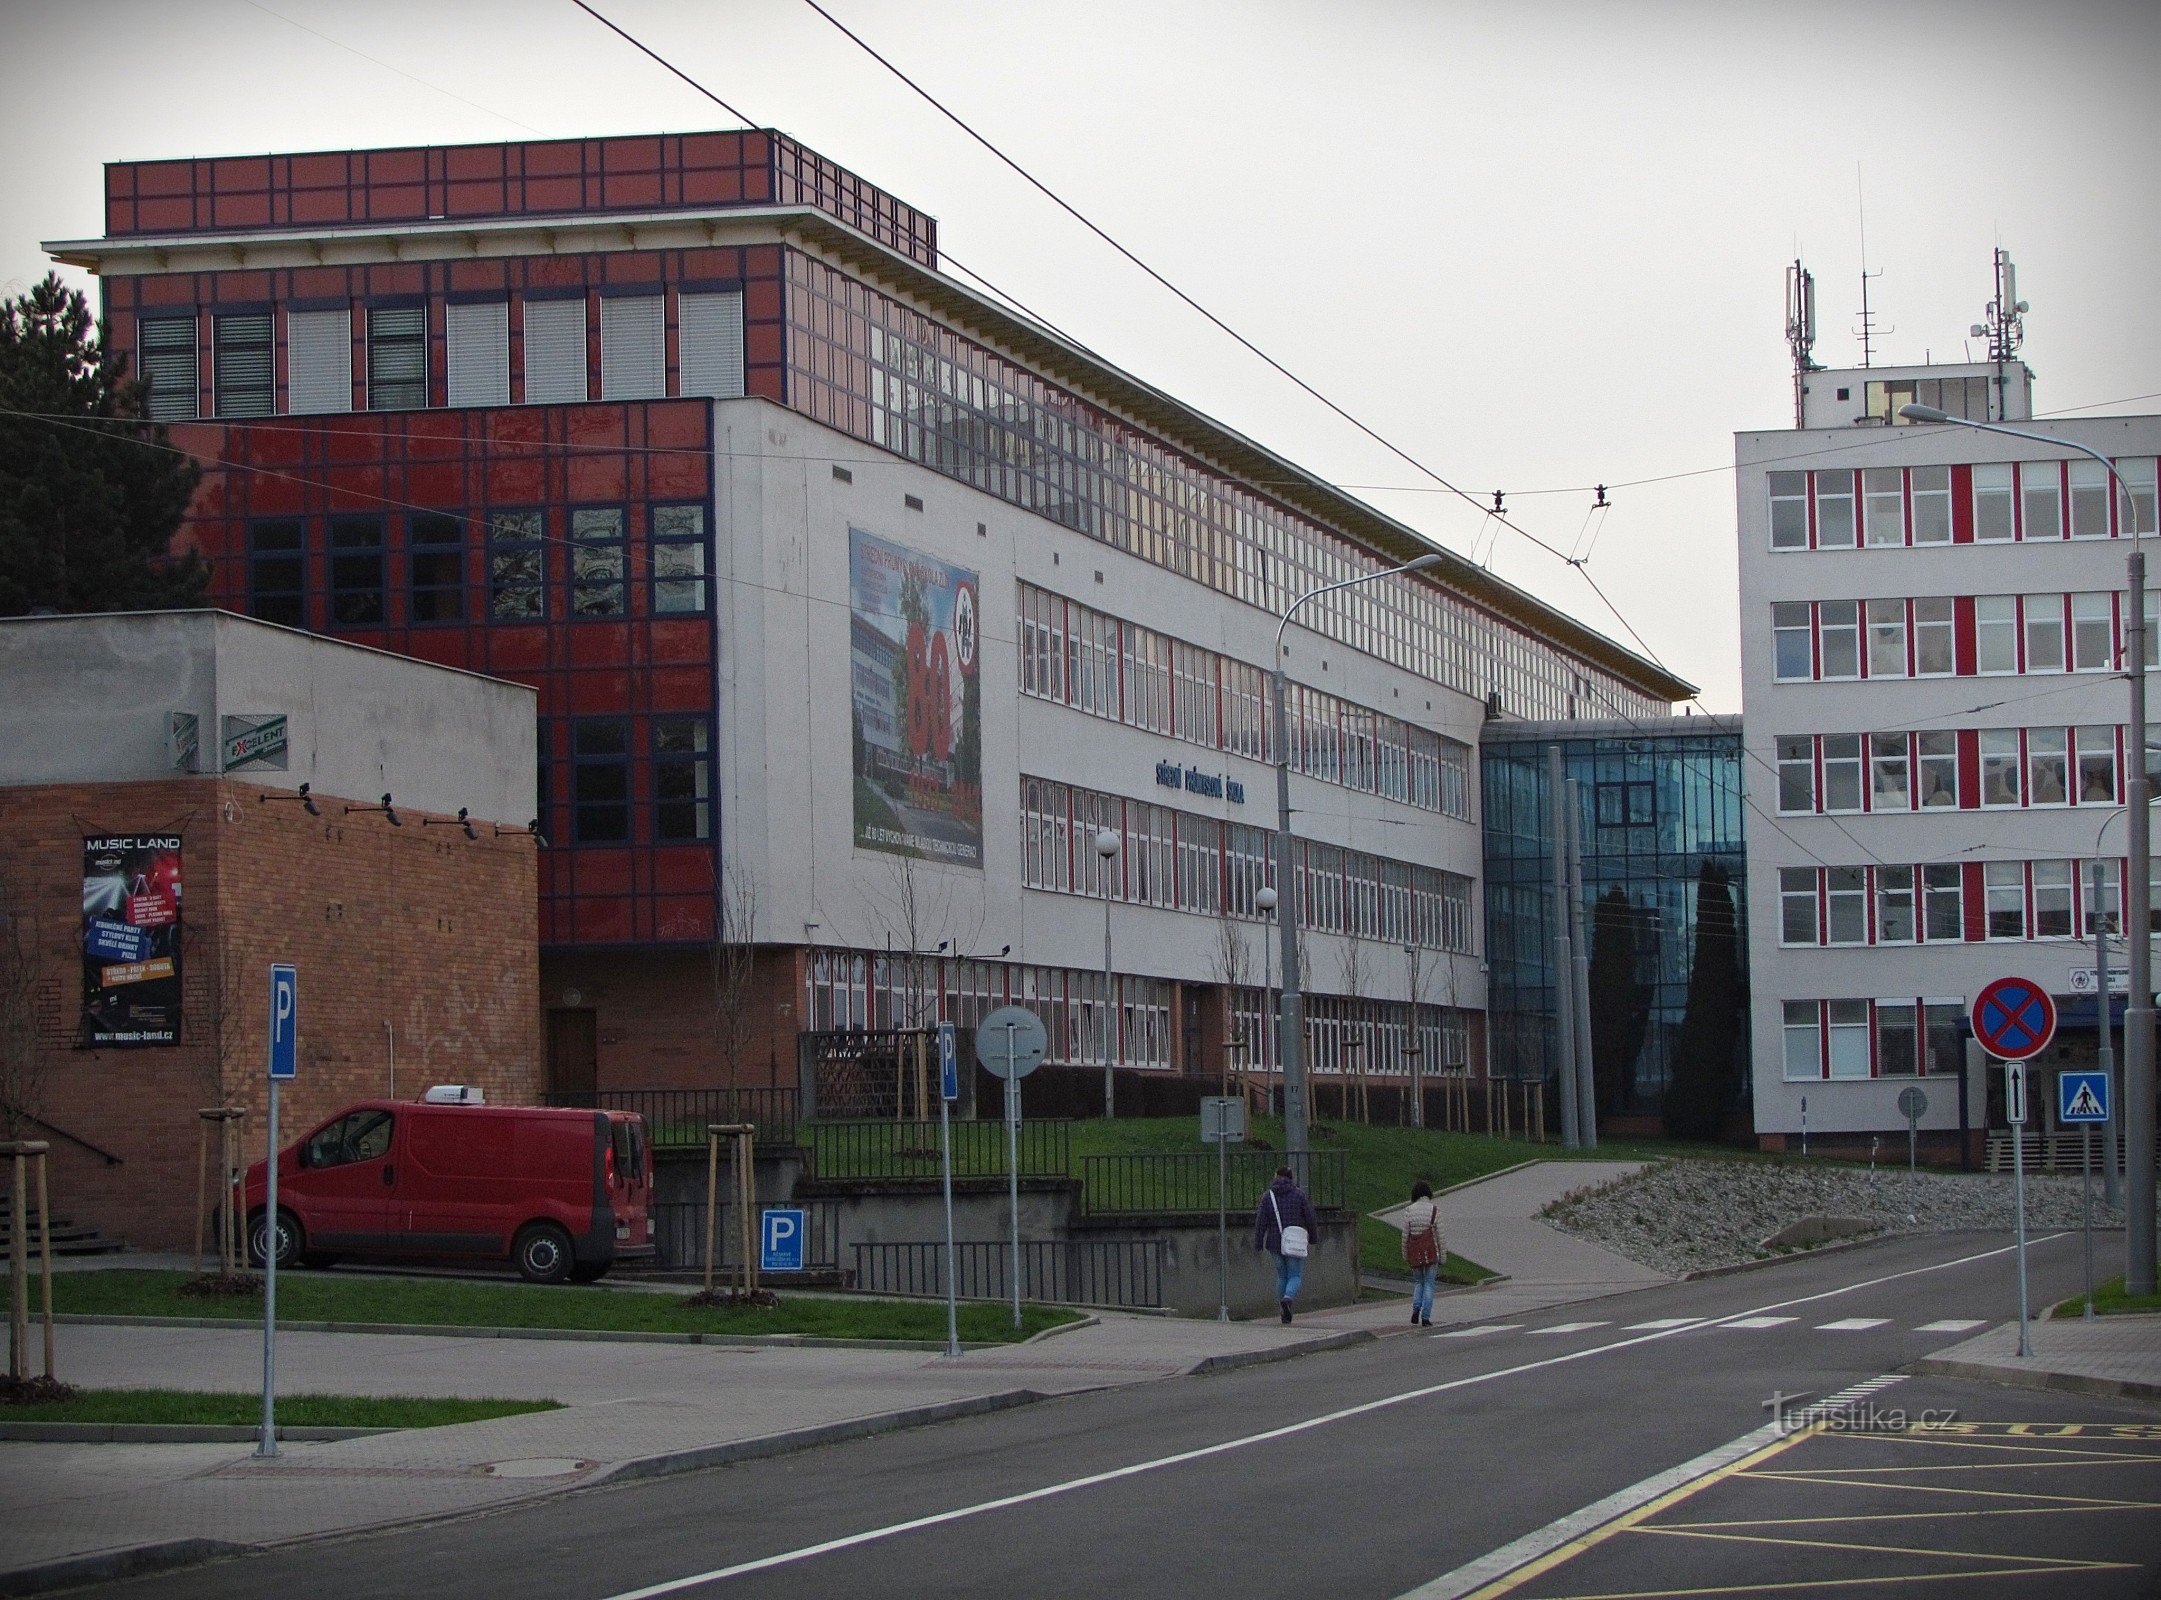 Zlín - bygninger af Secondary Industrial School